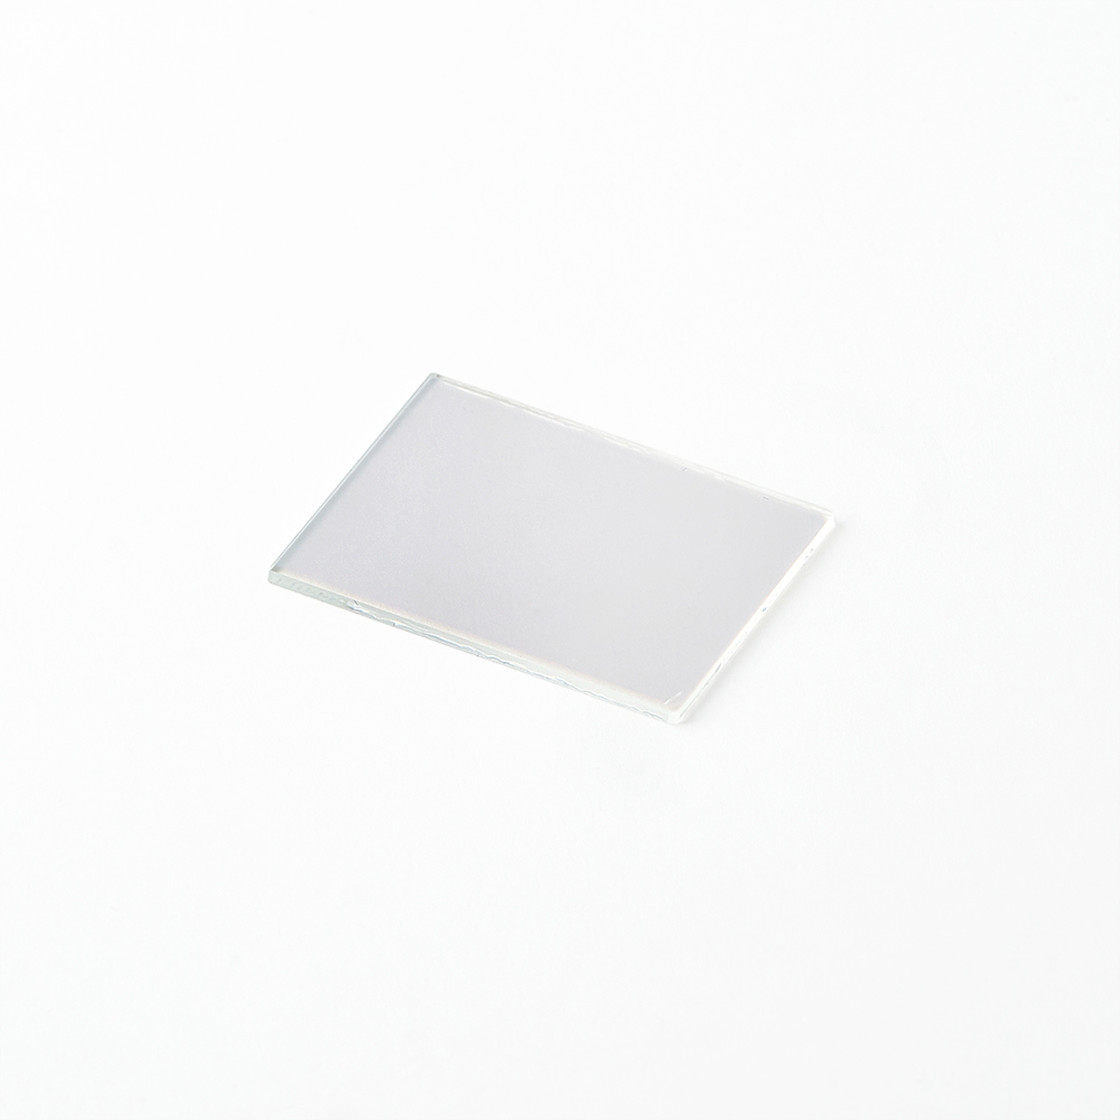 Teildurchlässiger Vorderflächen-Glasspiegel, 80 x 100 mm